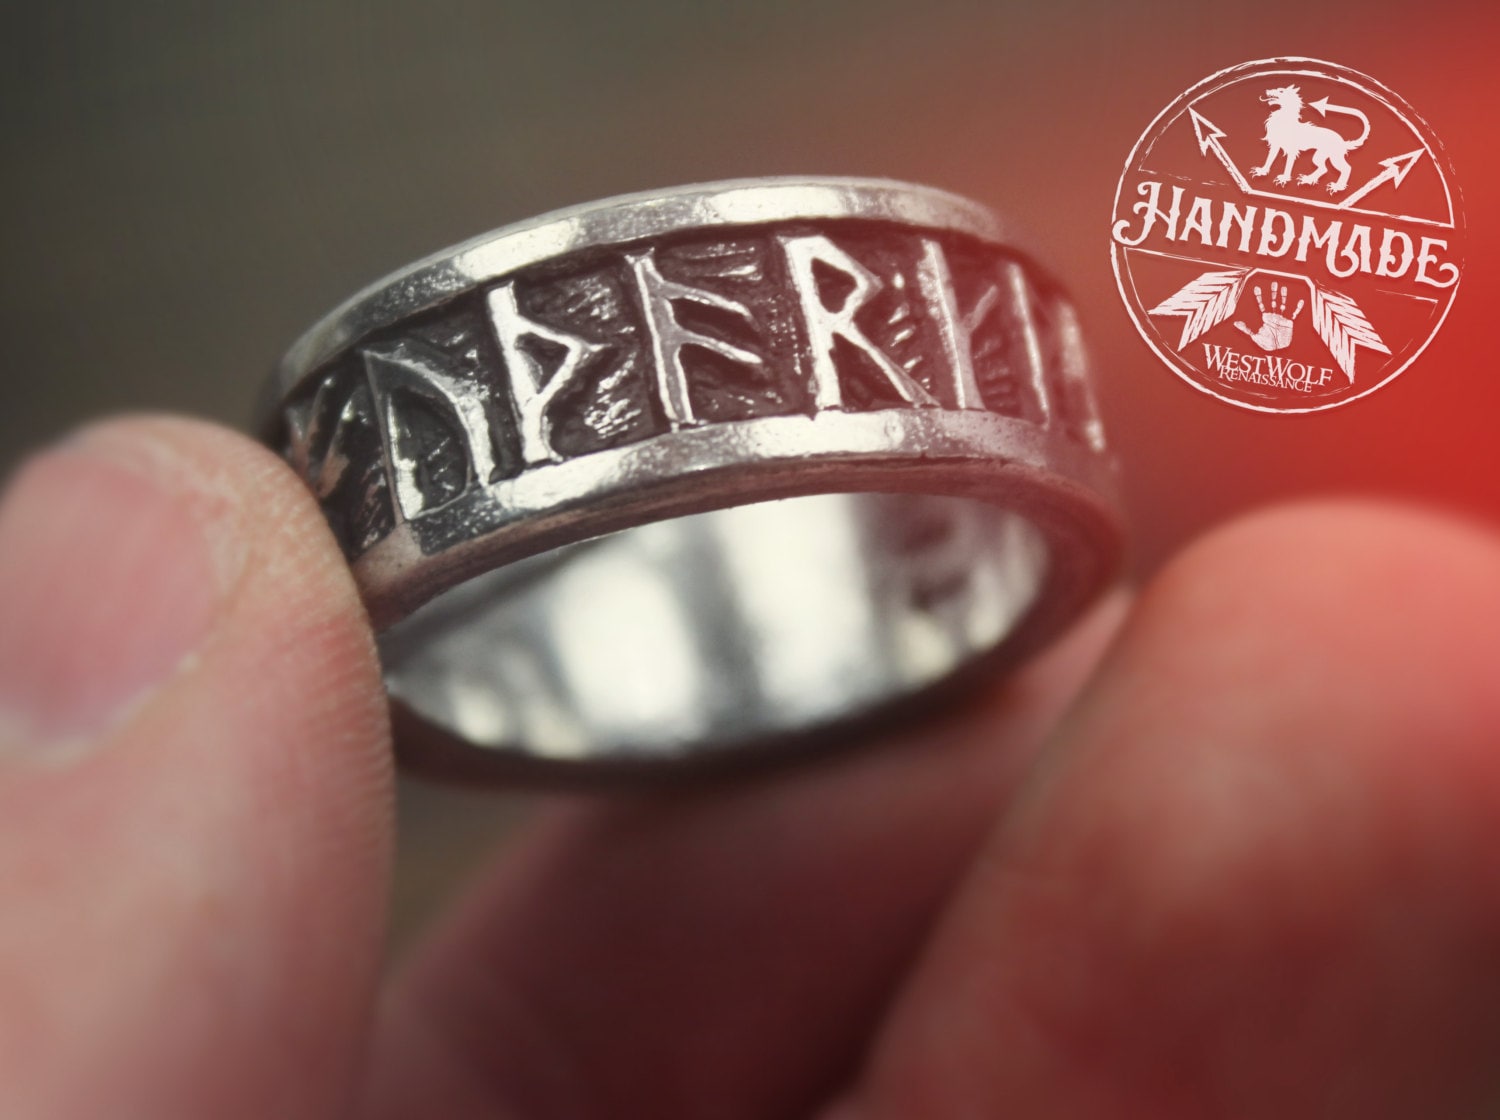 Viking Celtic Knot Rune Stainless Steel Rings Gold / US 13